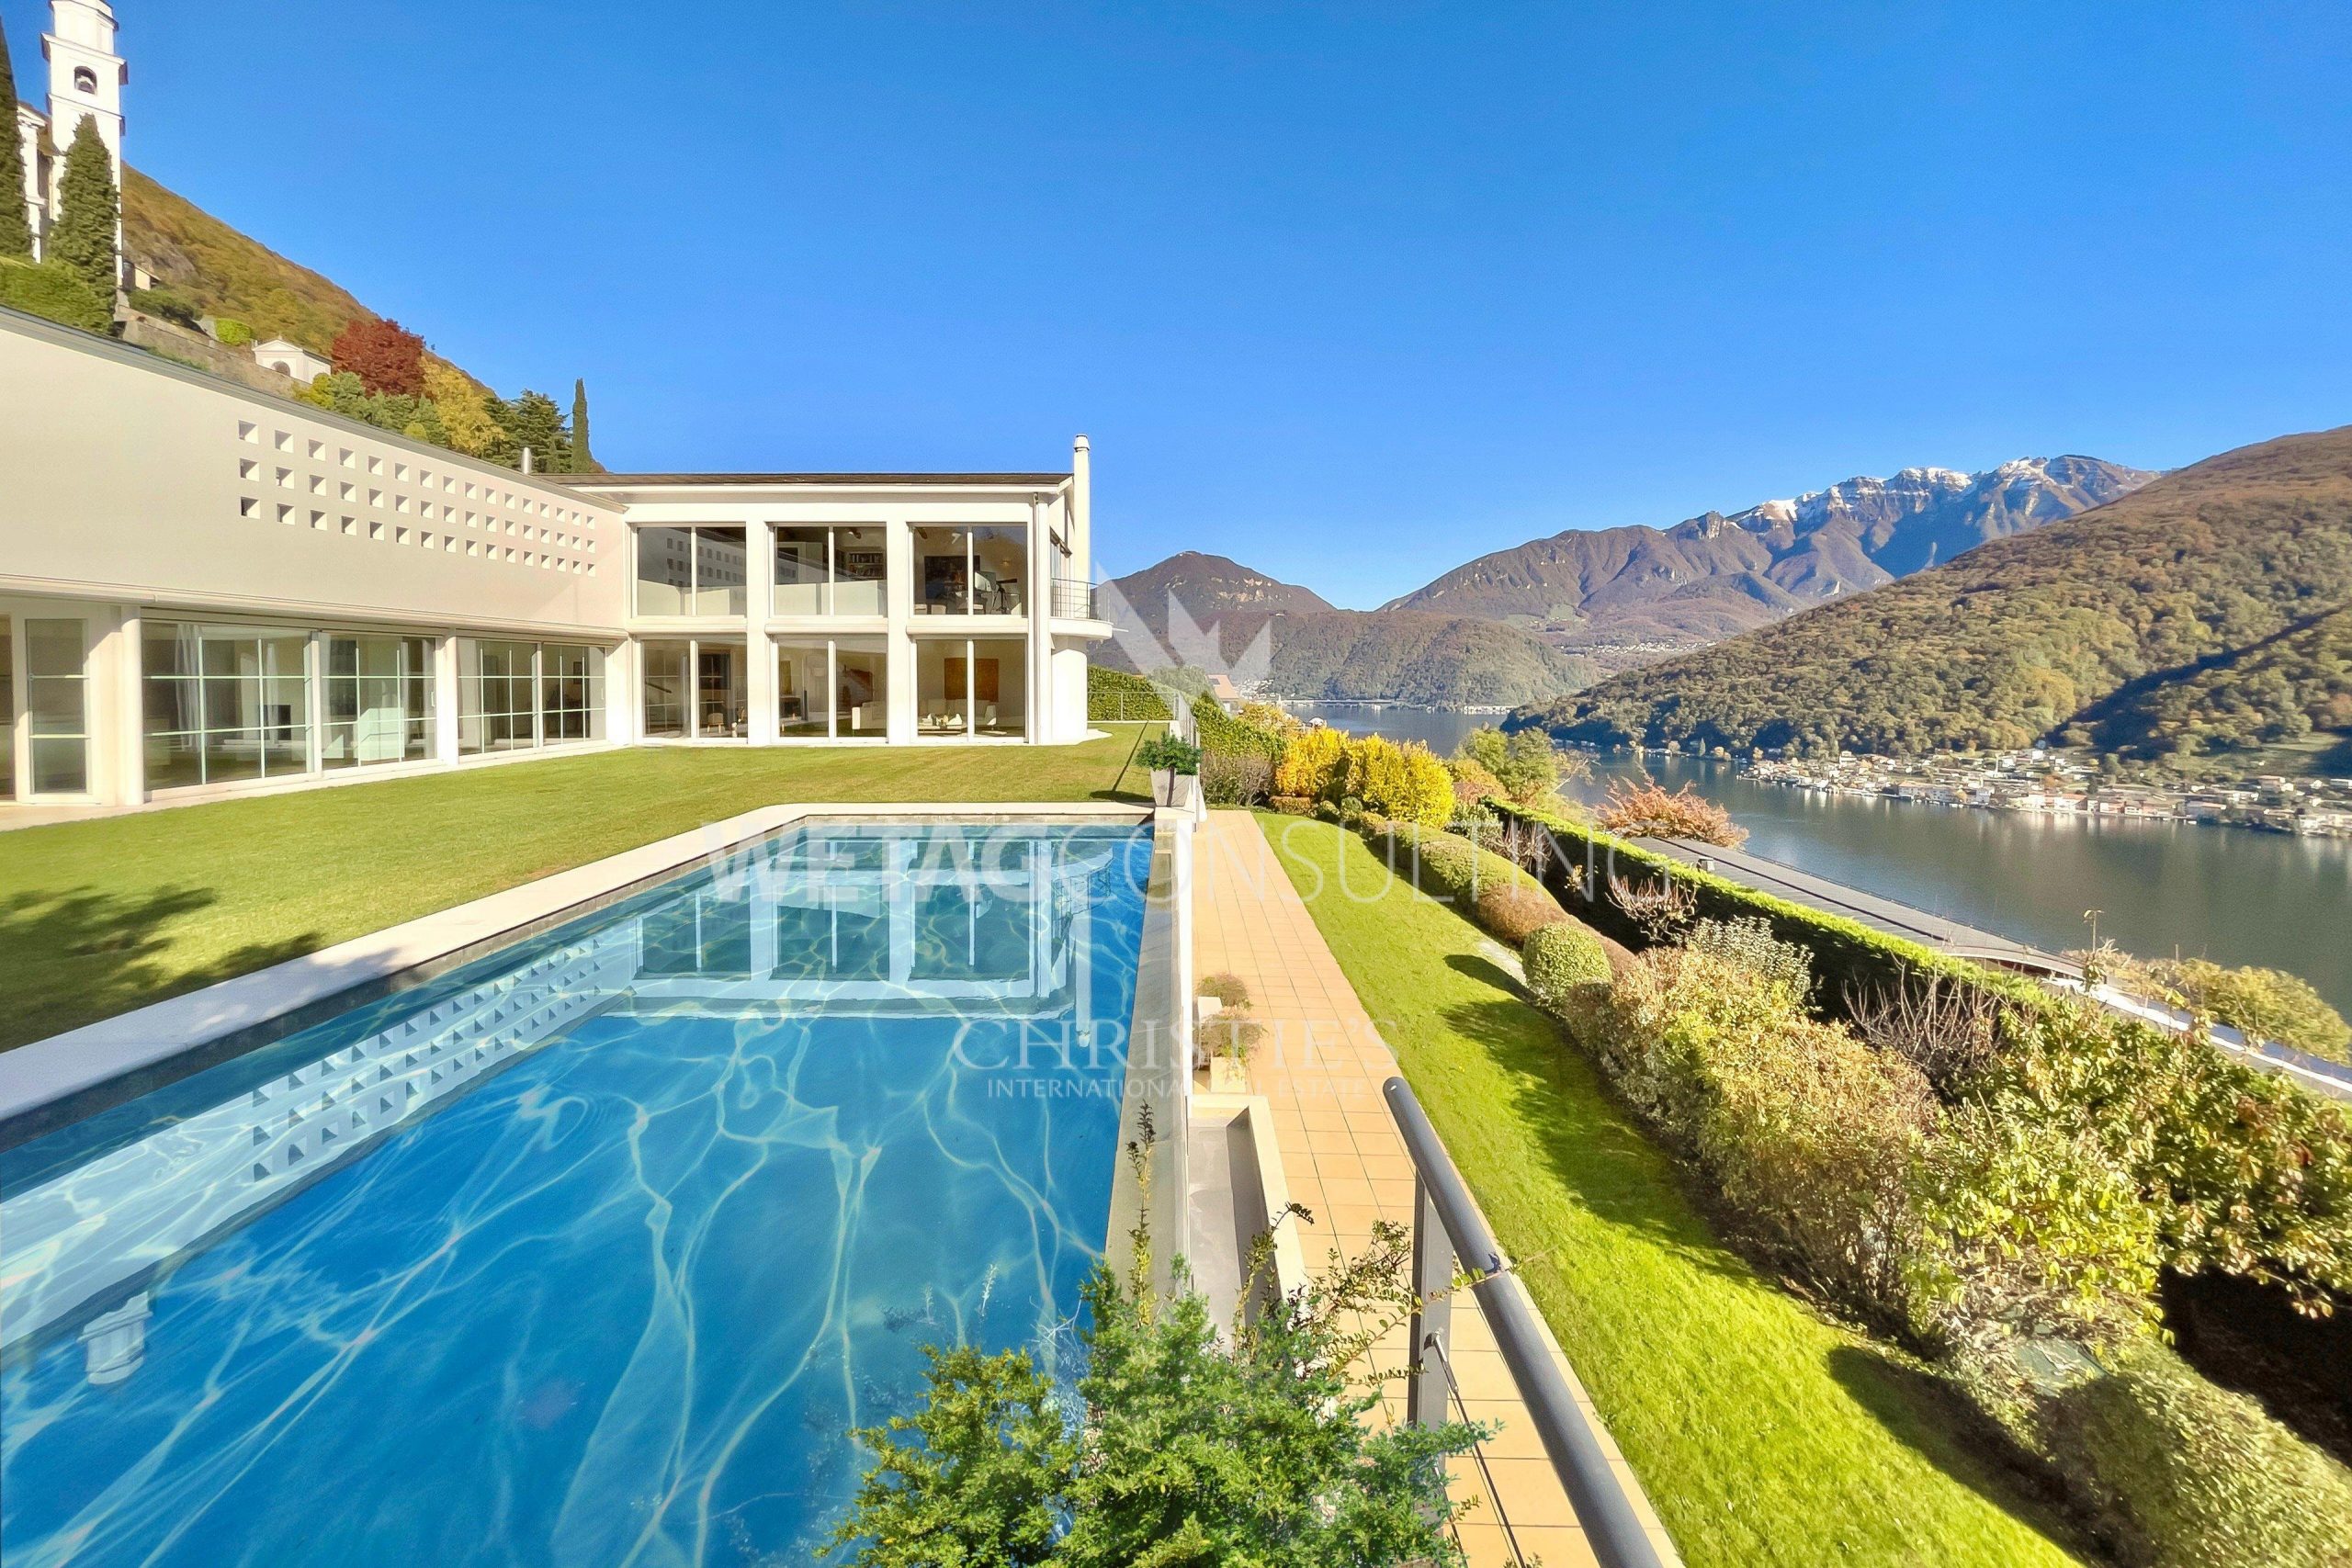 Portal Inmobiliario de Lujo en Vico Morcote, presenta chalet de lujo venta en Lugano, residencia exclusiva para comprar y propiedades independientes en venta en Tesino.